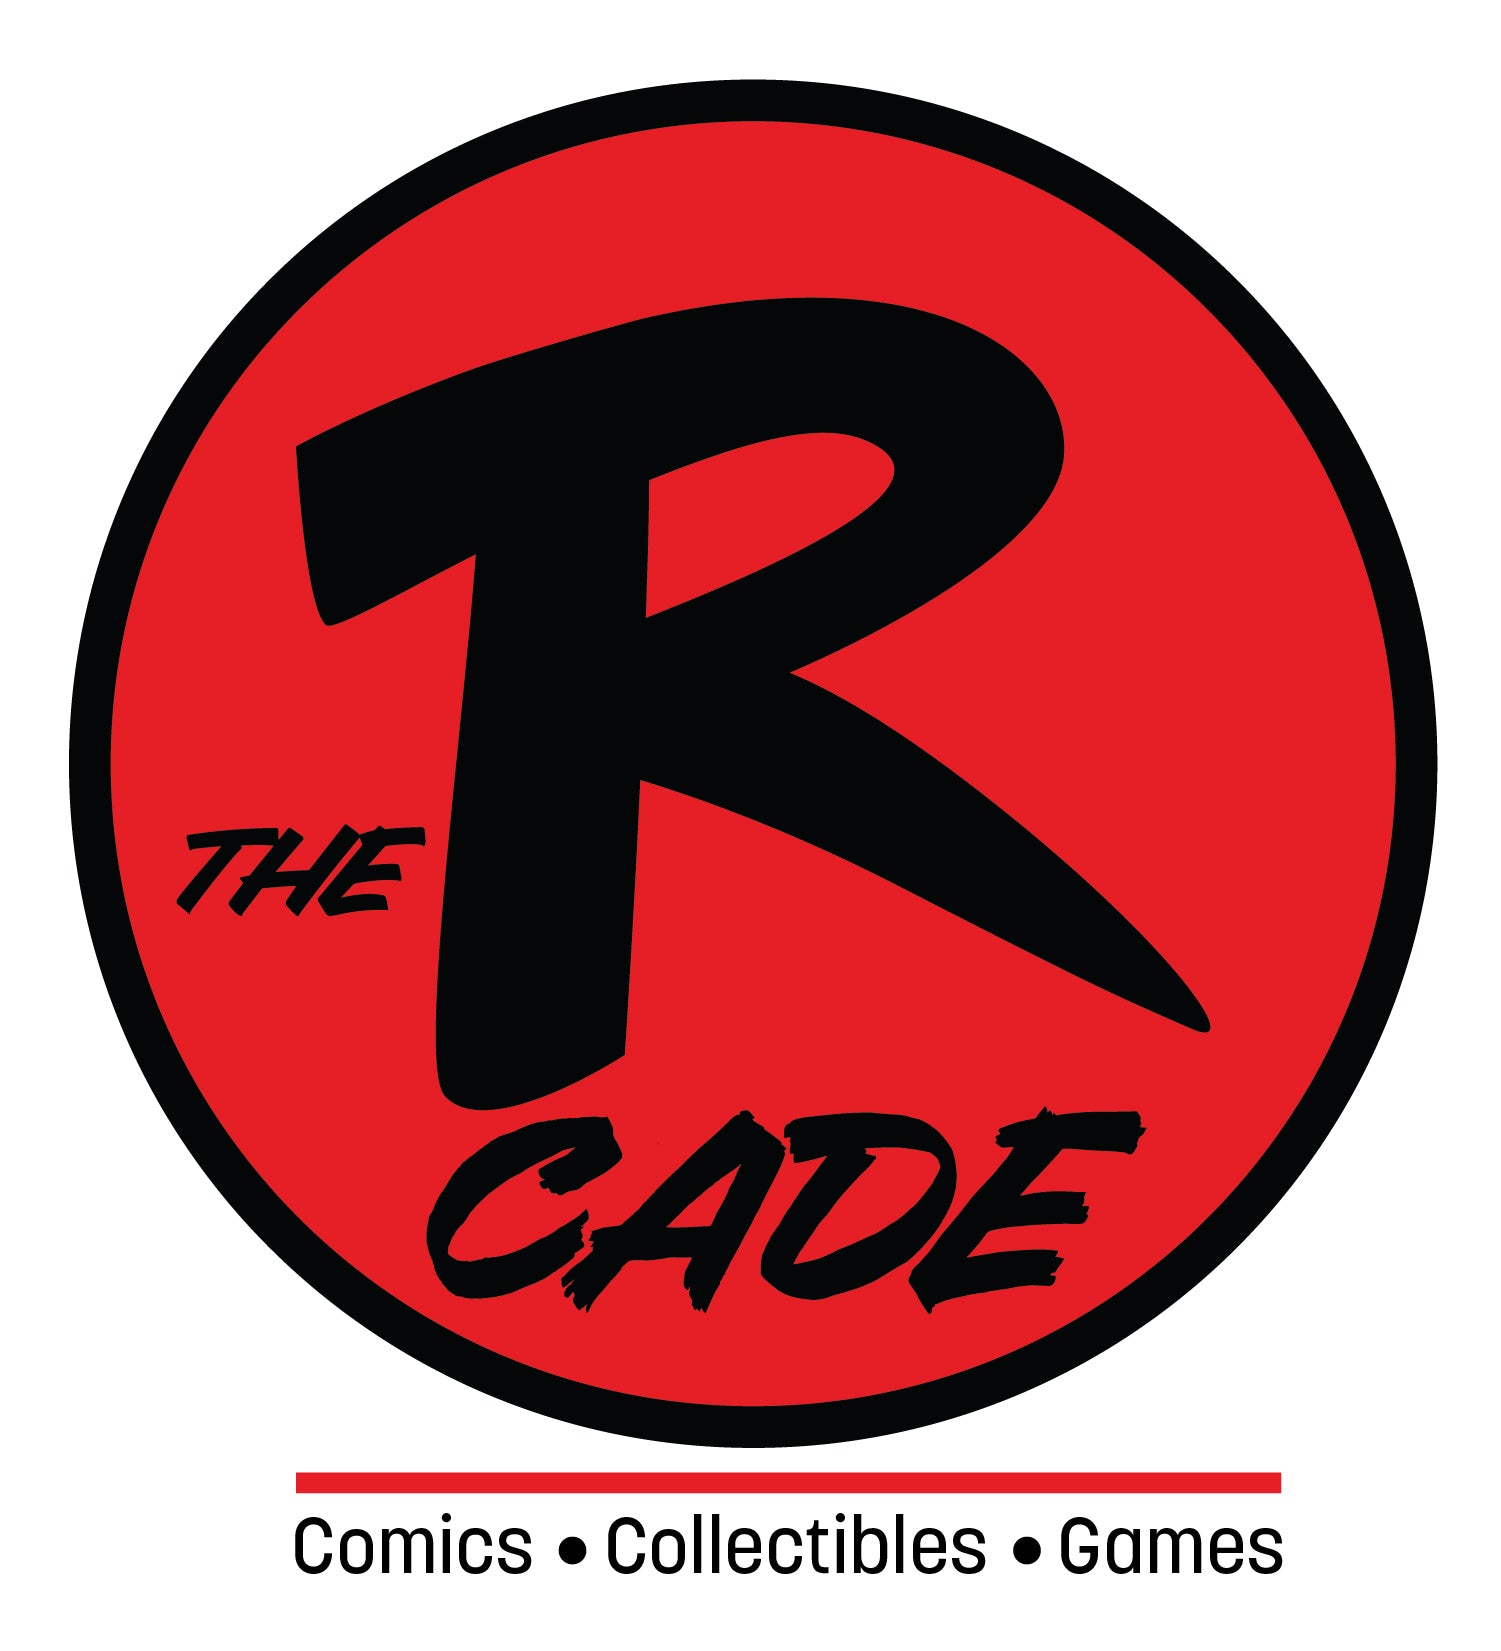 The Rcade Comics & Collectibles